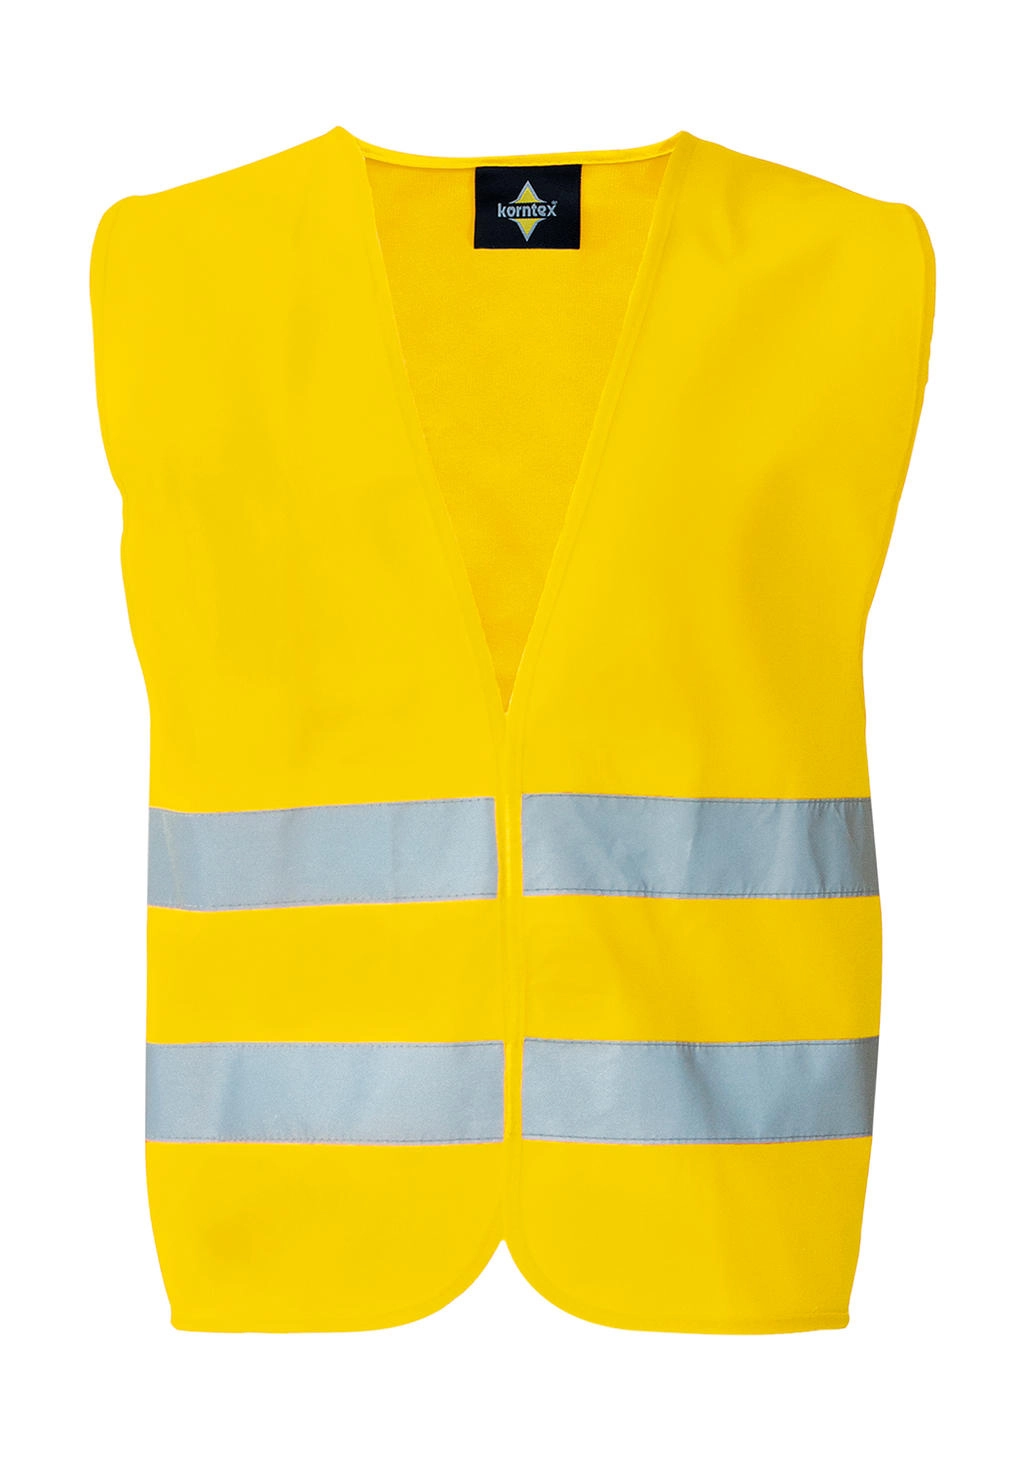 Basic Safety-Vest Duo-Pack zum Besticken und Bedrucken in der Farbe Yellow mit Ihren Logo, Schriftzug oder Motiv.